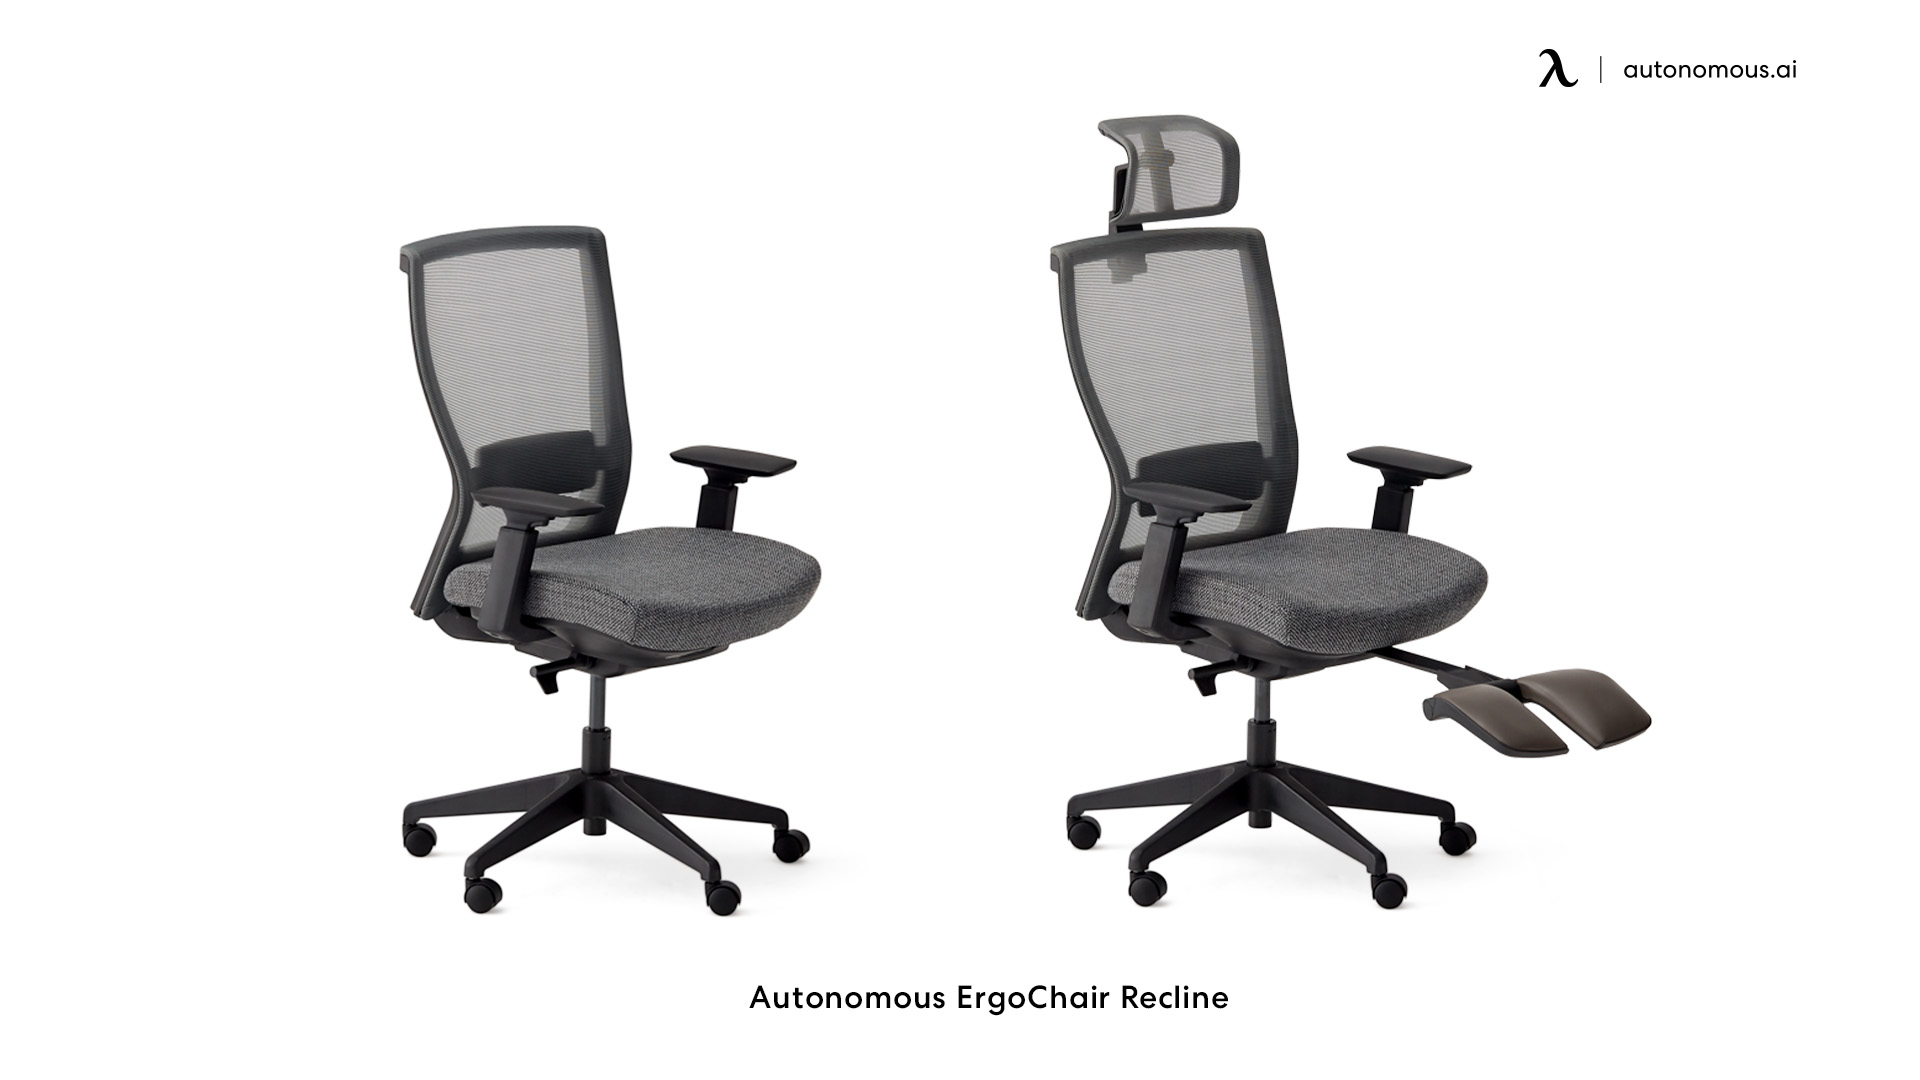 ErgoChair Recline tall office chair for standing desk